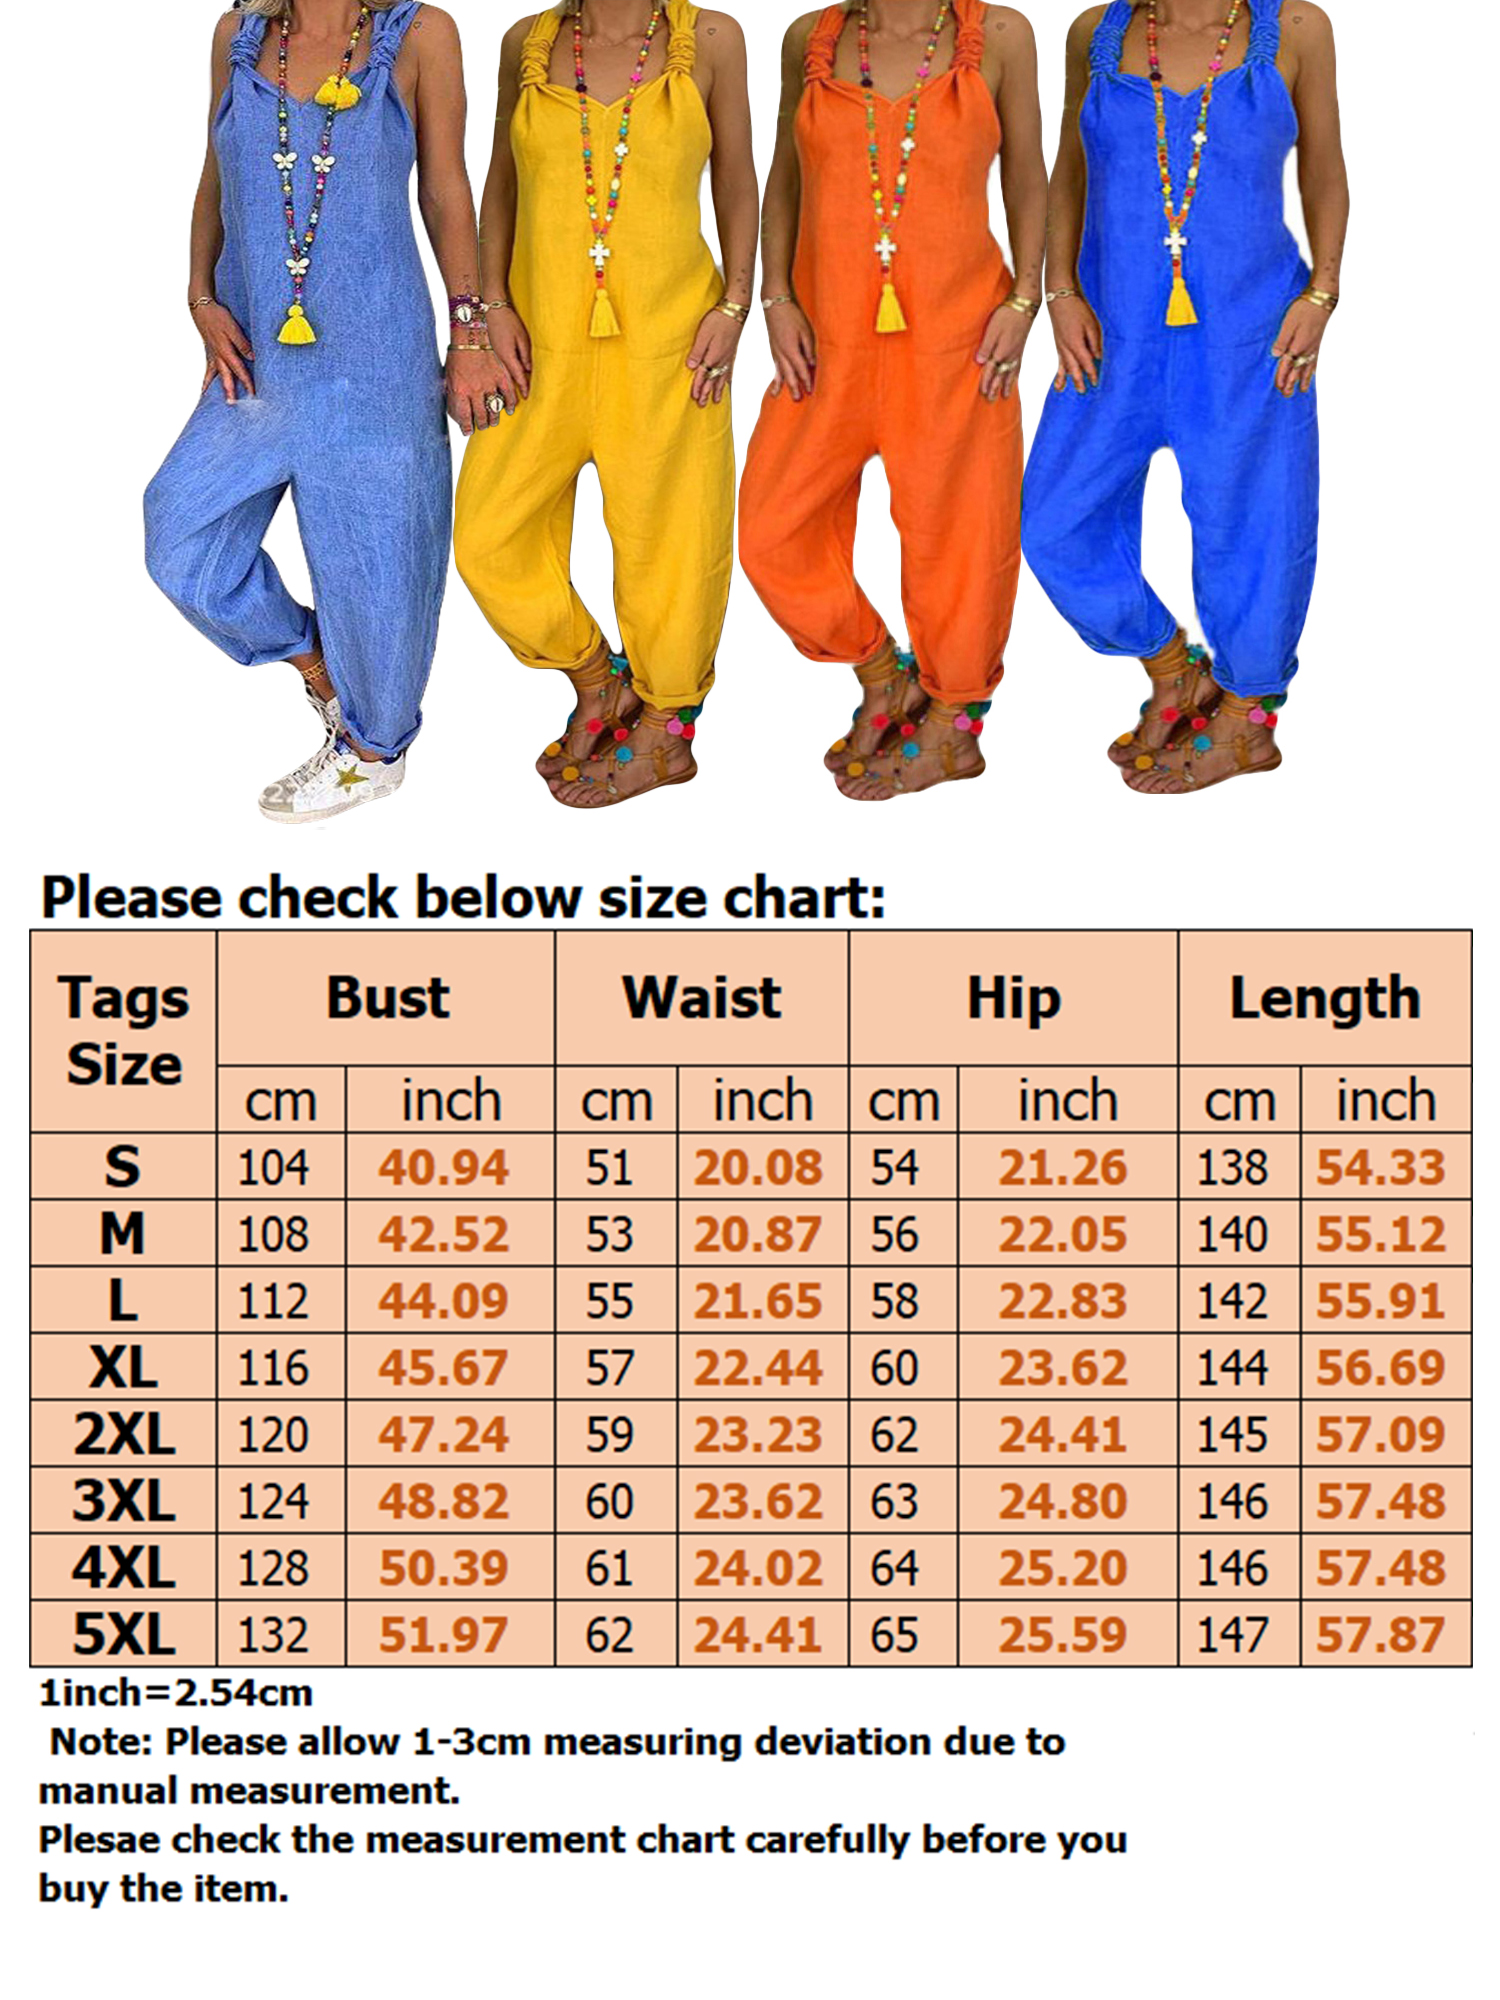 Women's Jumpsuits Casual Long Rompers Wide Leg Baggy Bibs Overalls Harem Pants Plus Cotton Linen Jumpsuits Ladies Summer Bandage Jumpsuit S-5XL - image 2 of 3